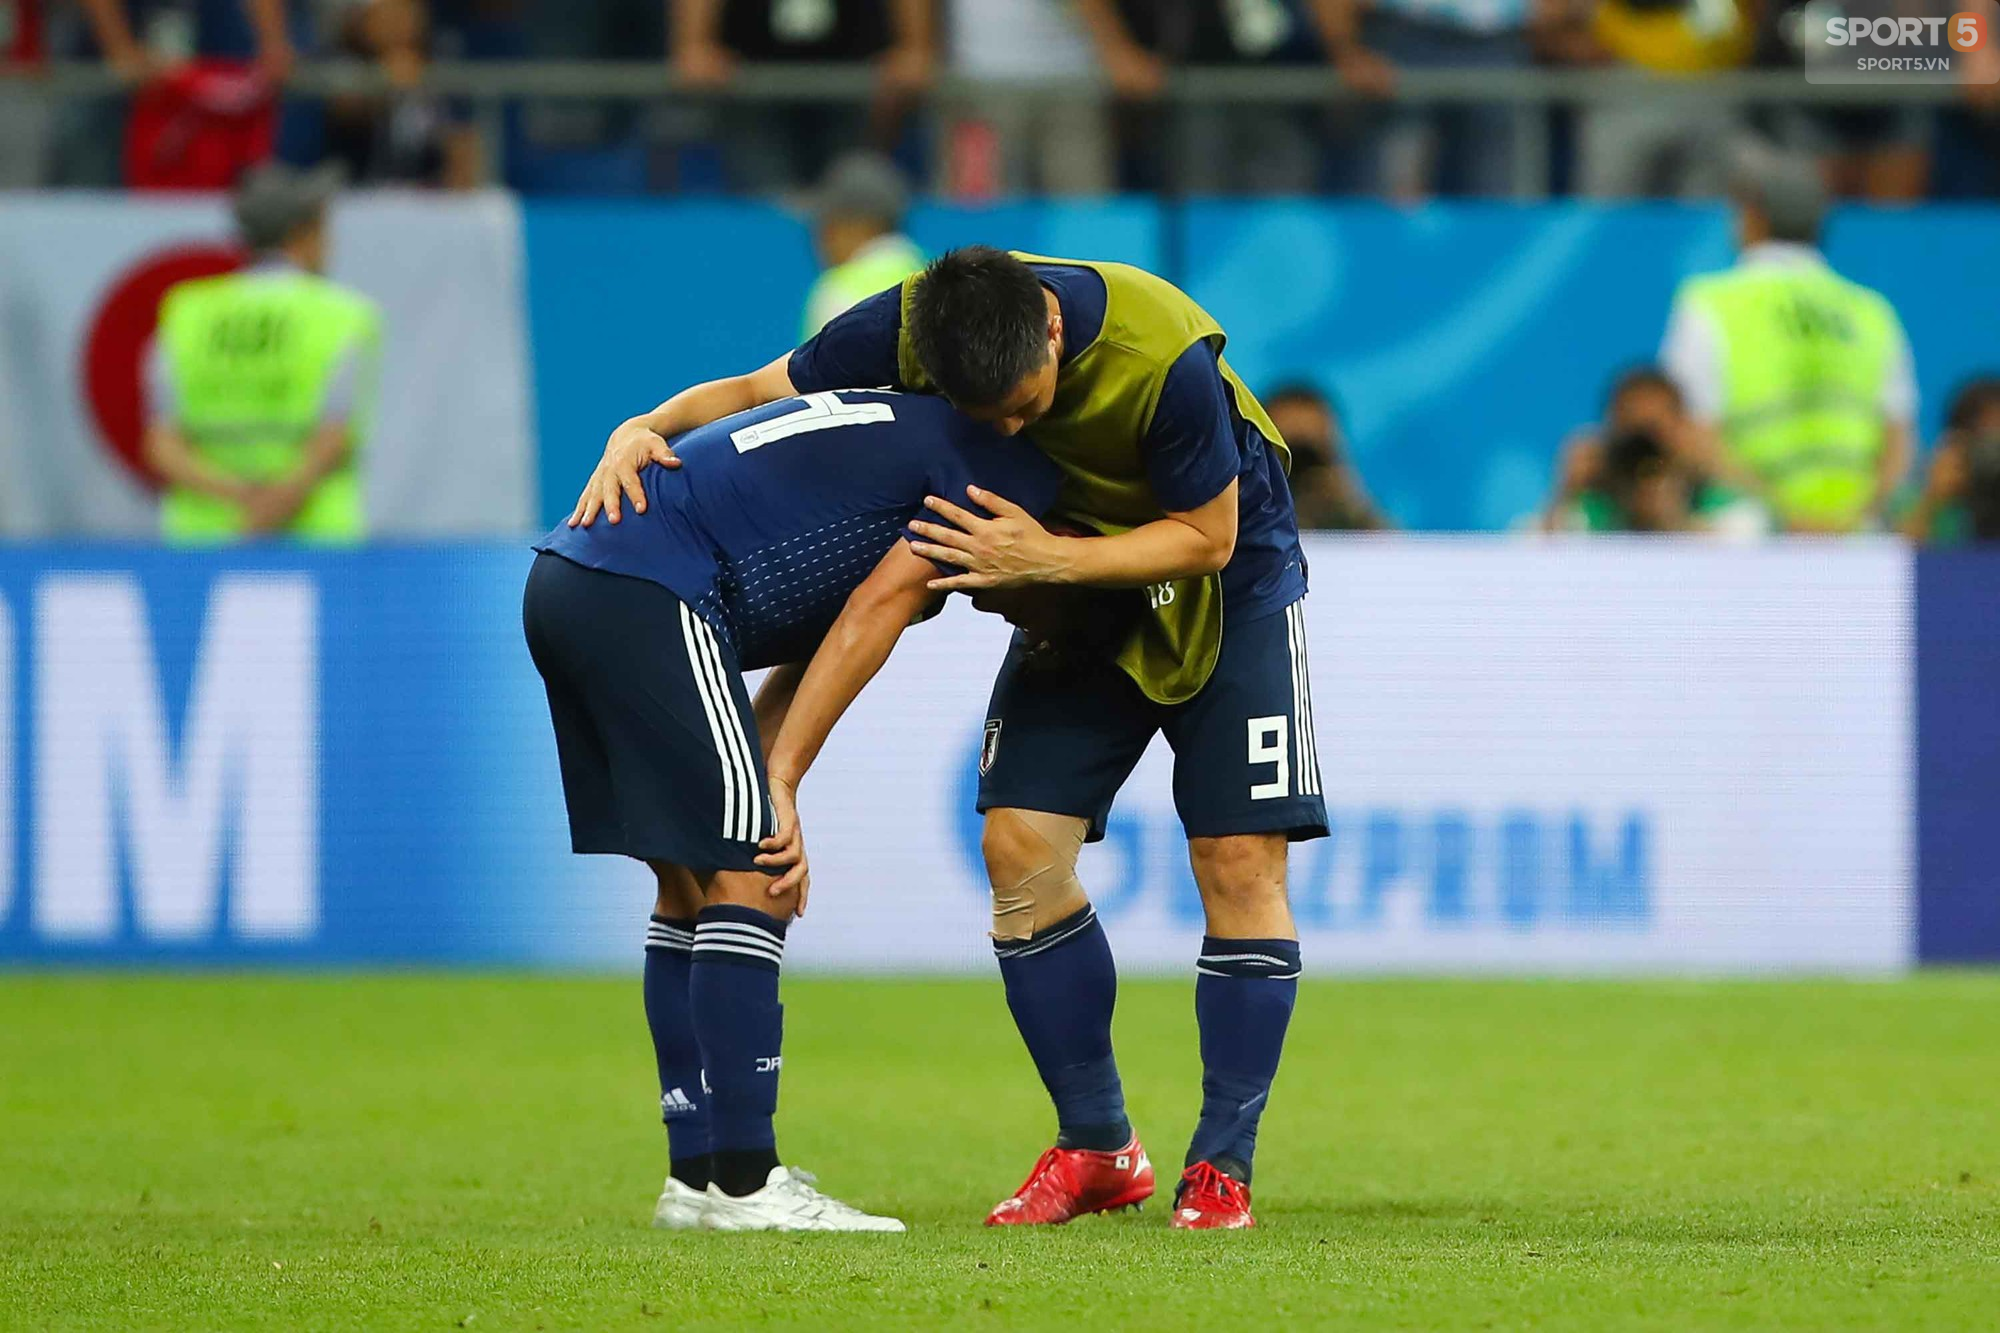 Cầu thủ Nhật Bản đổ gục, fan òa khóc sau trận thua ngược Bỉ - Ảnh 5.